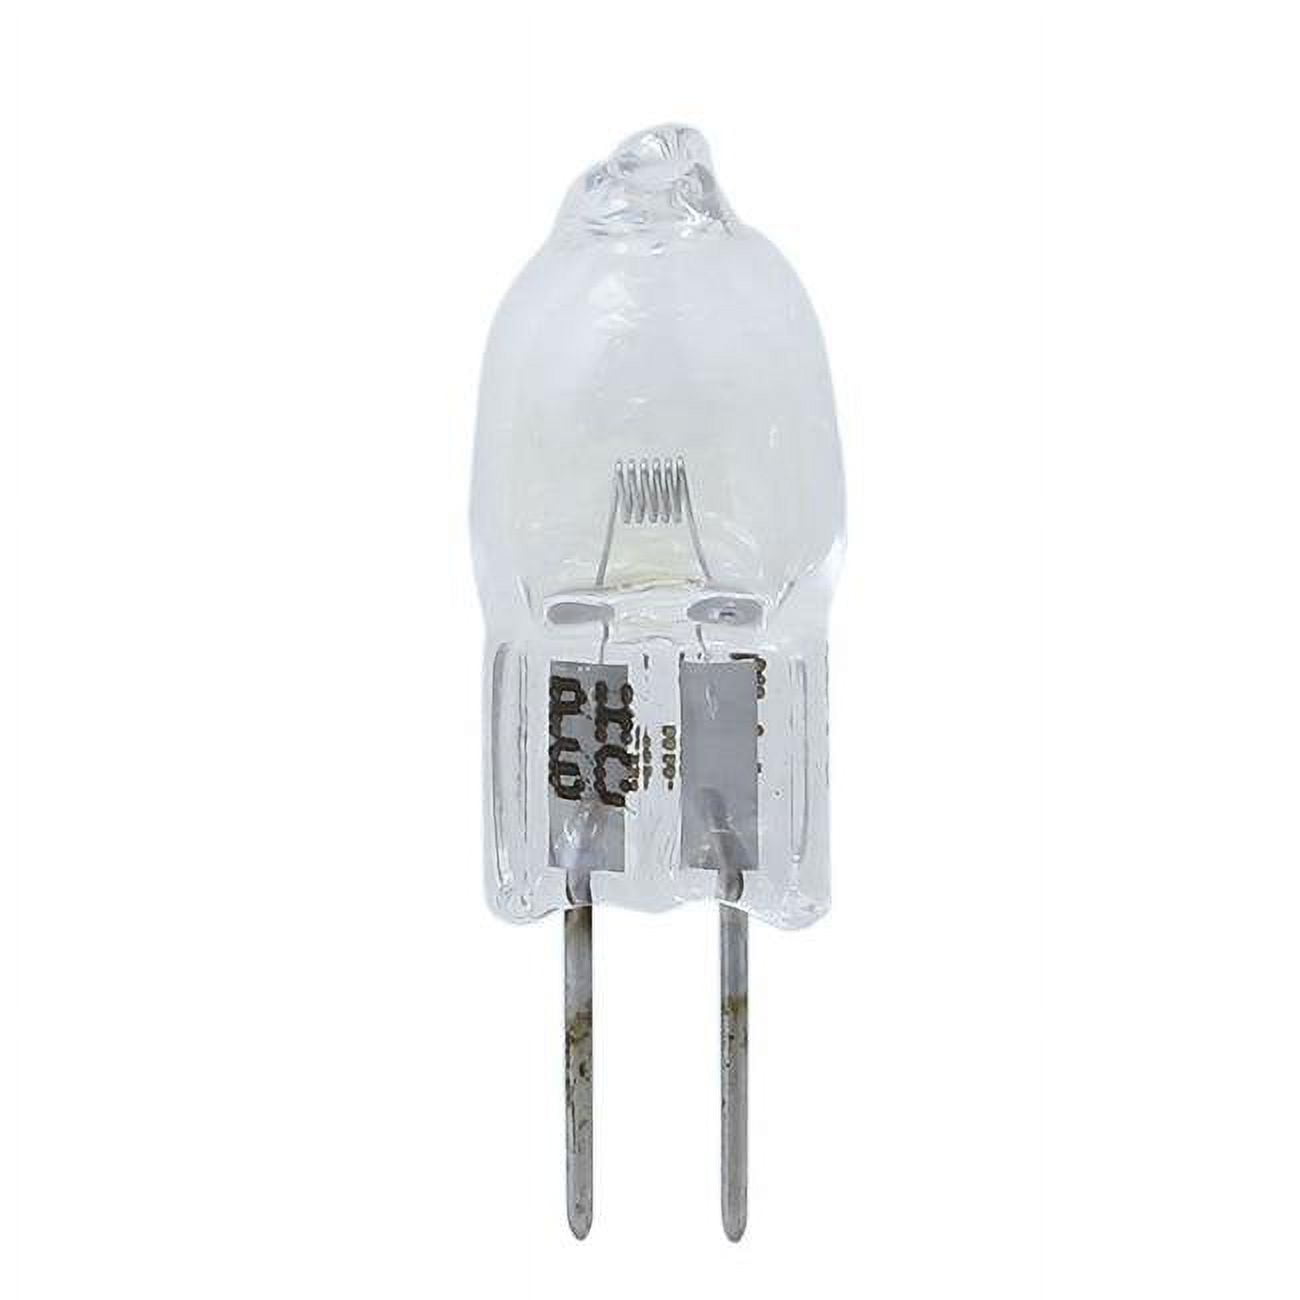 Dny-170224 Halogen Non-reflector 5761 30w G4 6v Light Bulb